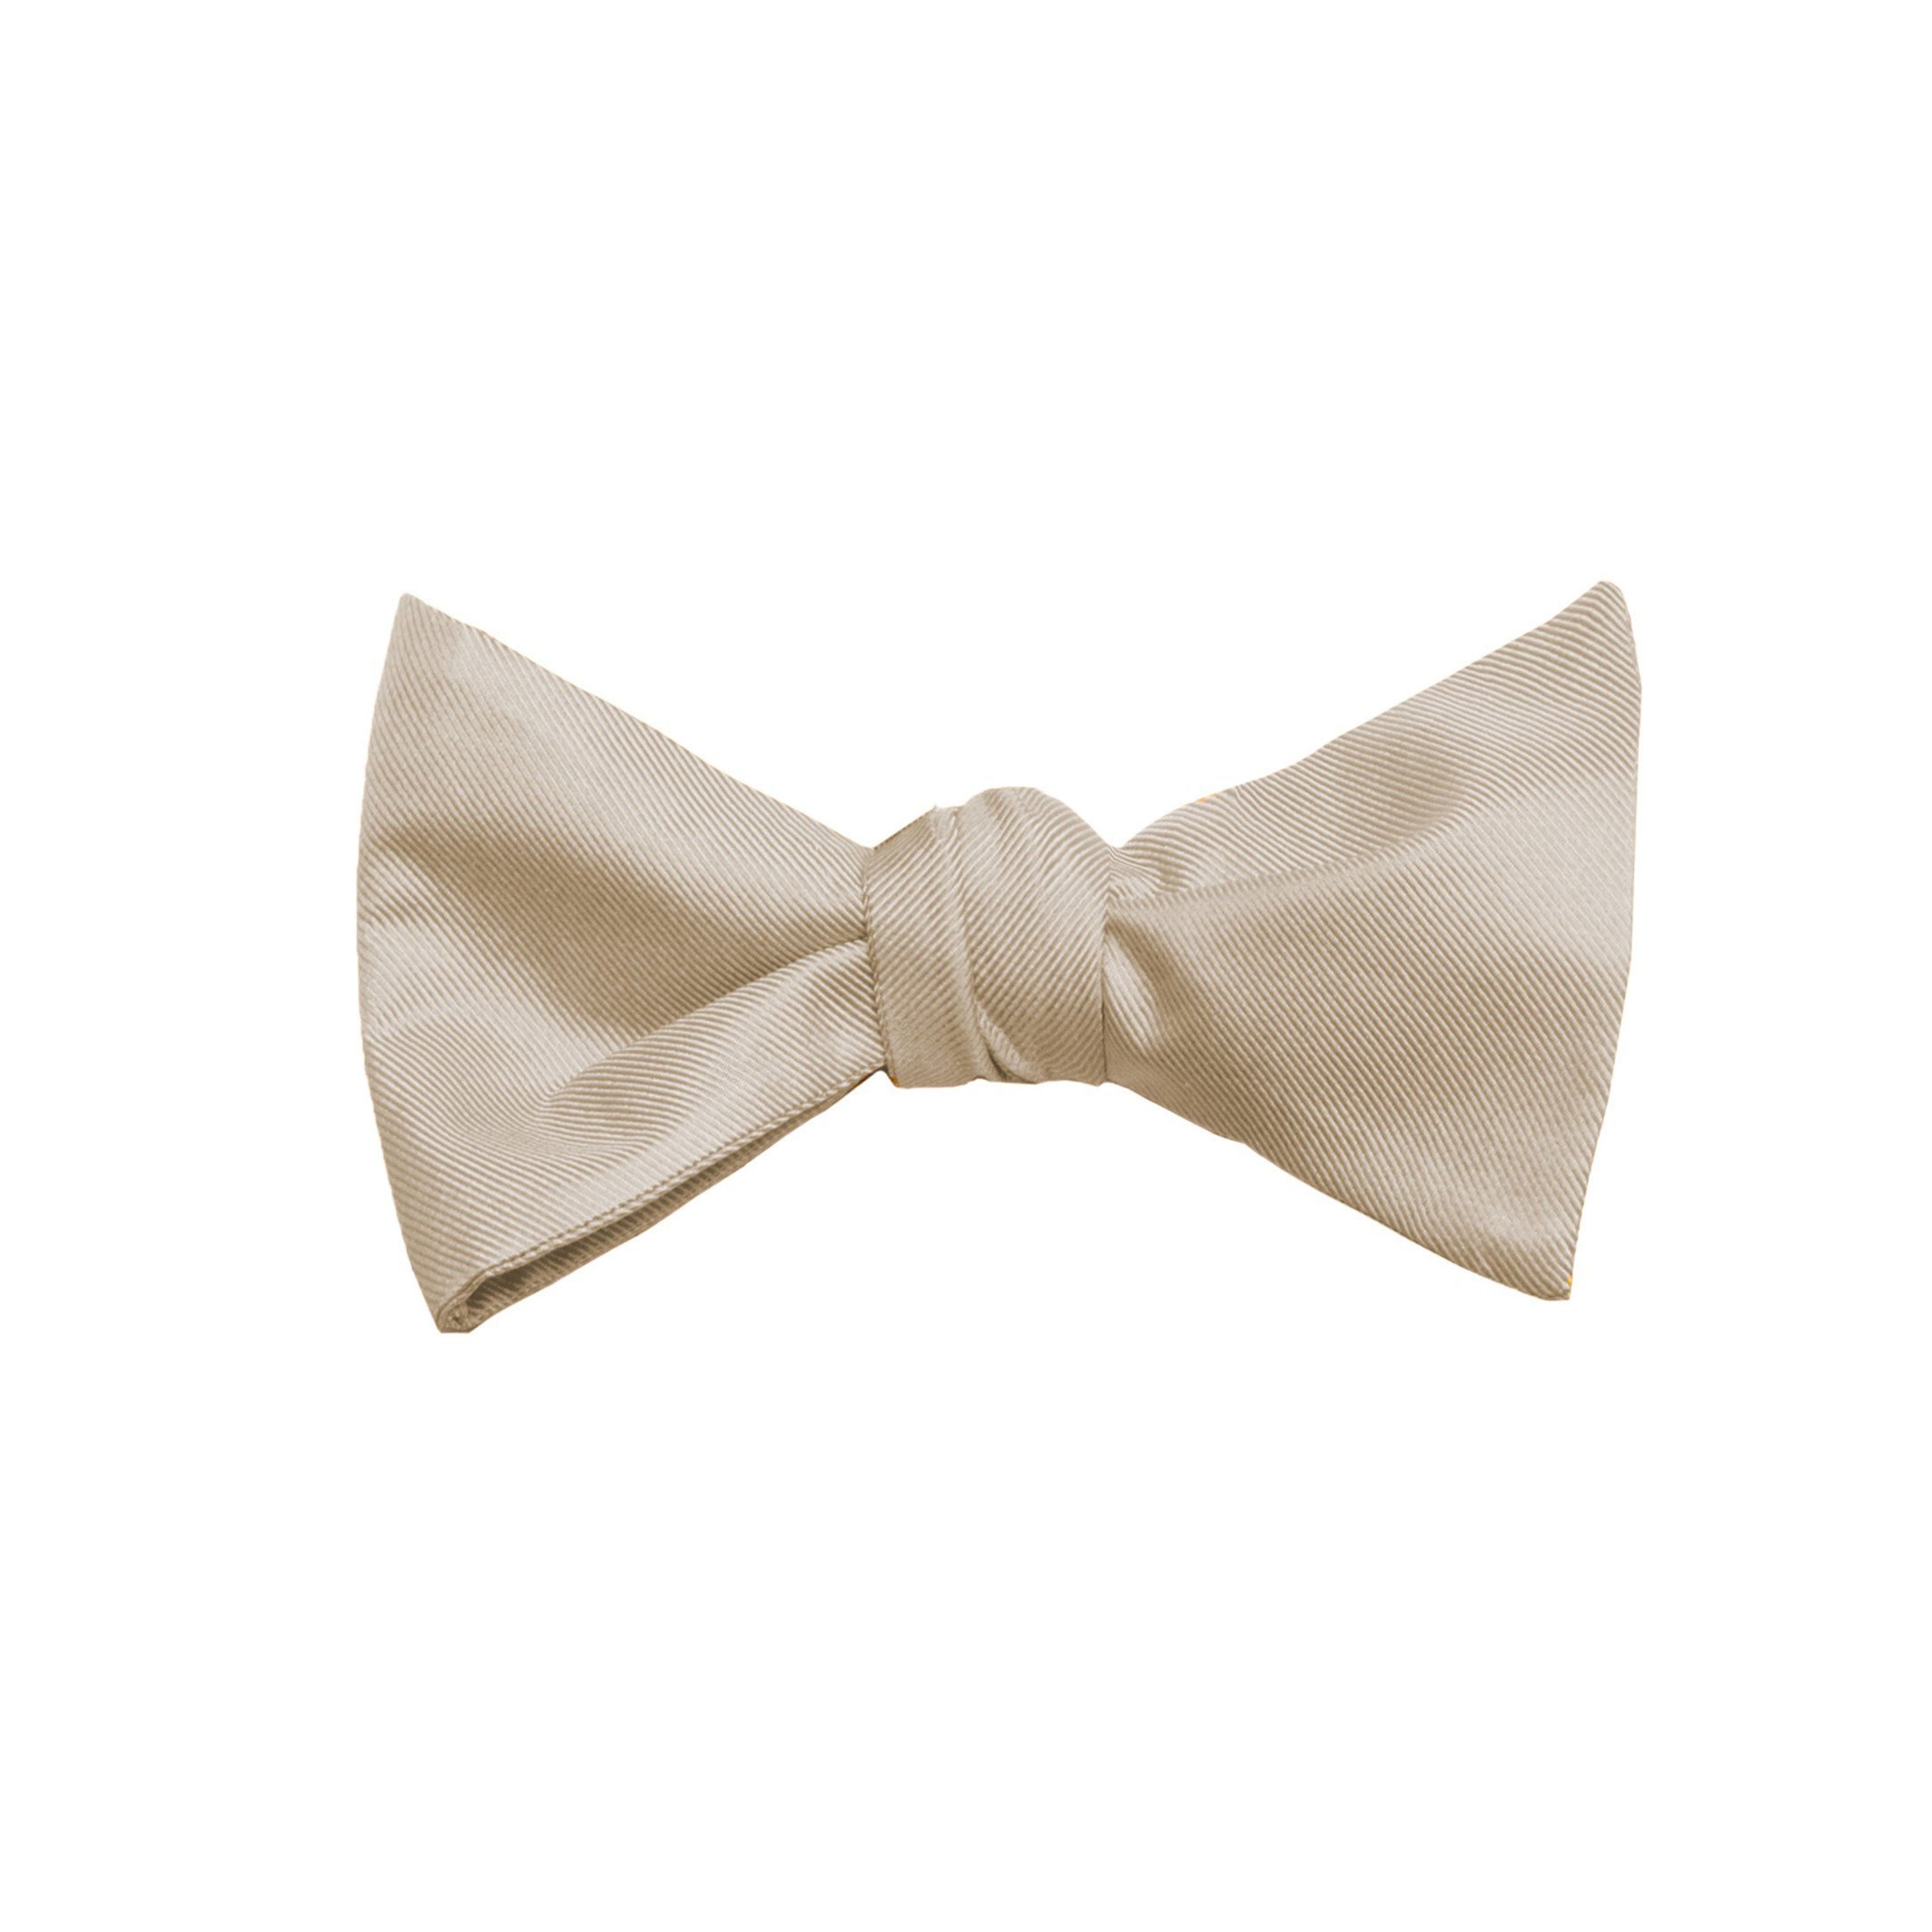 Solid Champagne Silk Bow Tie (Self-tie) (Wall Street) - SprezzaBox